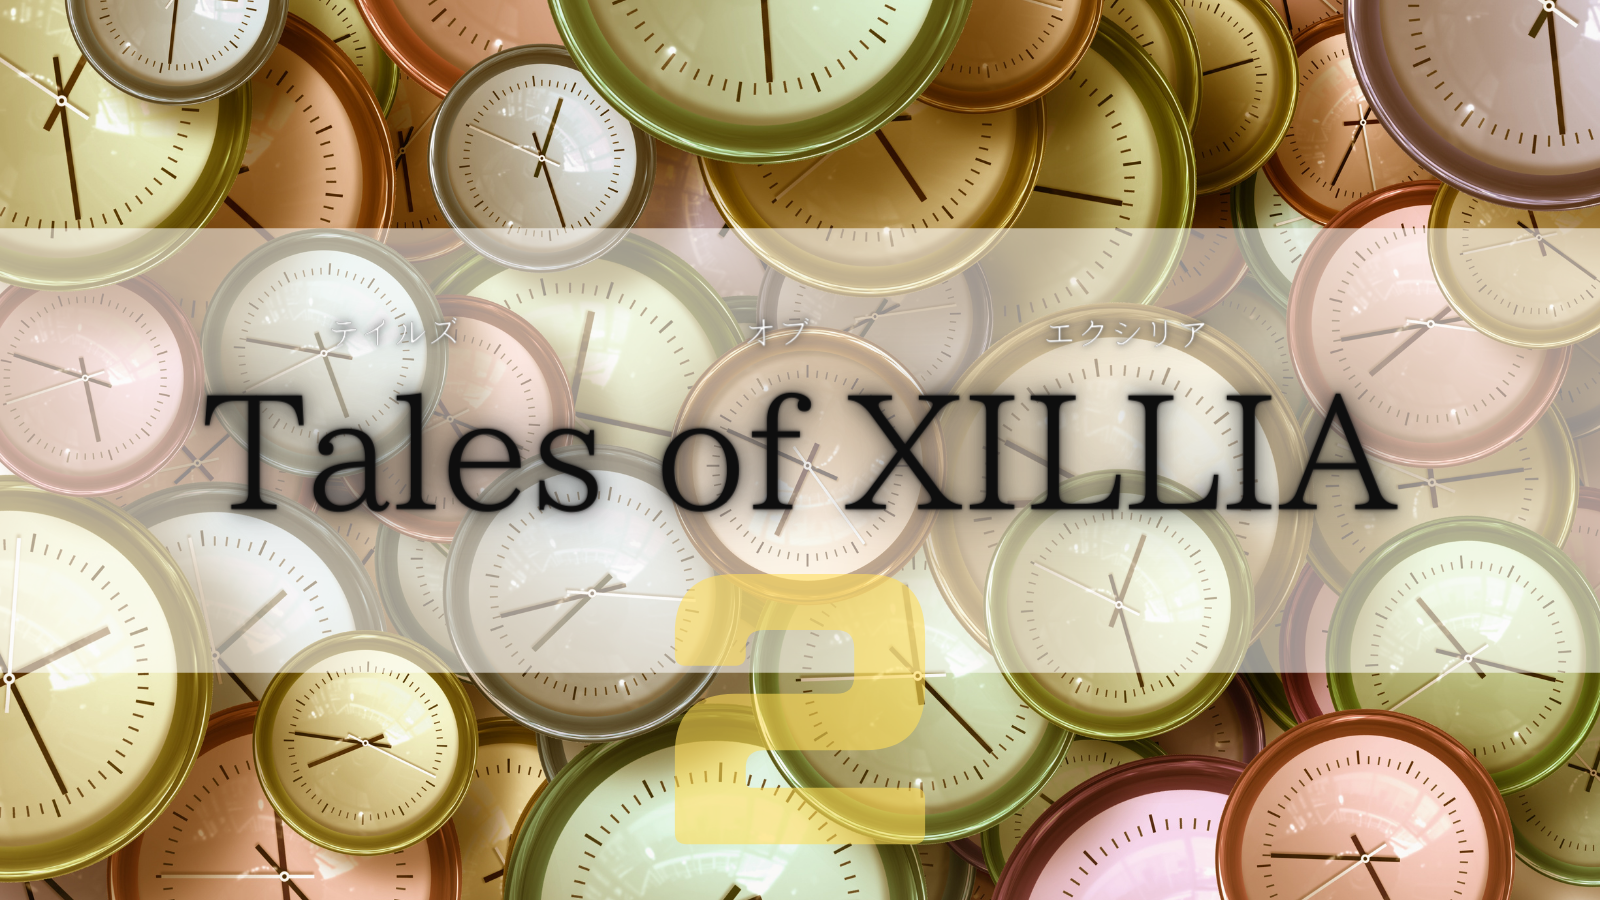 Tales of Xillia2